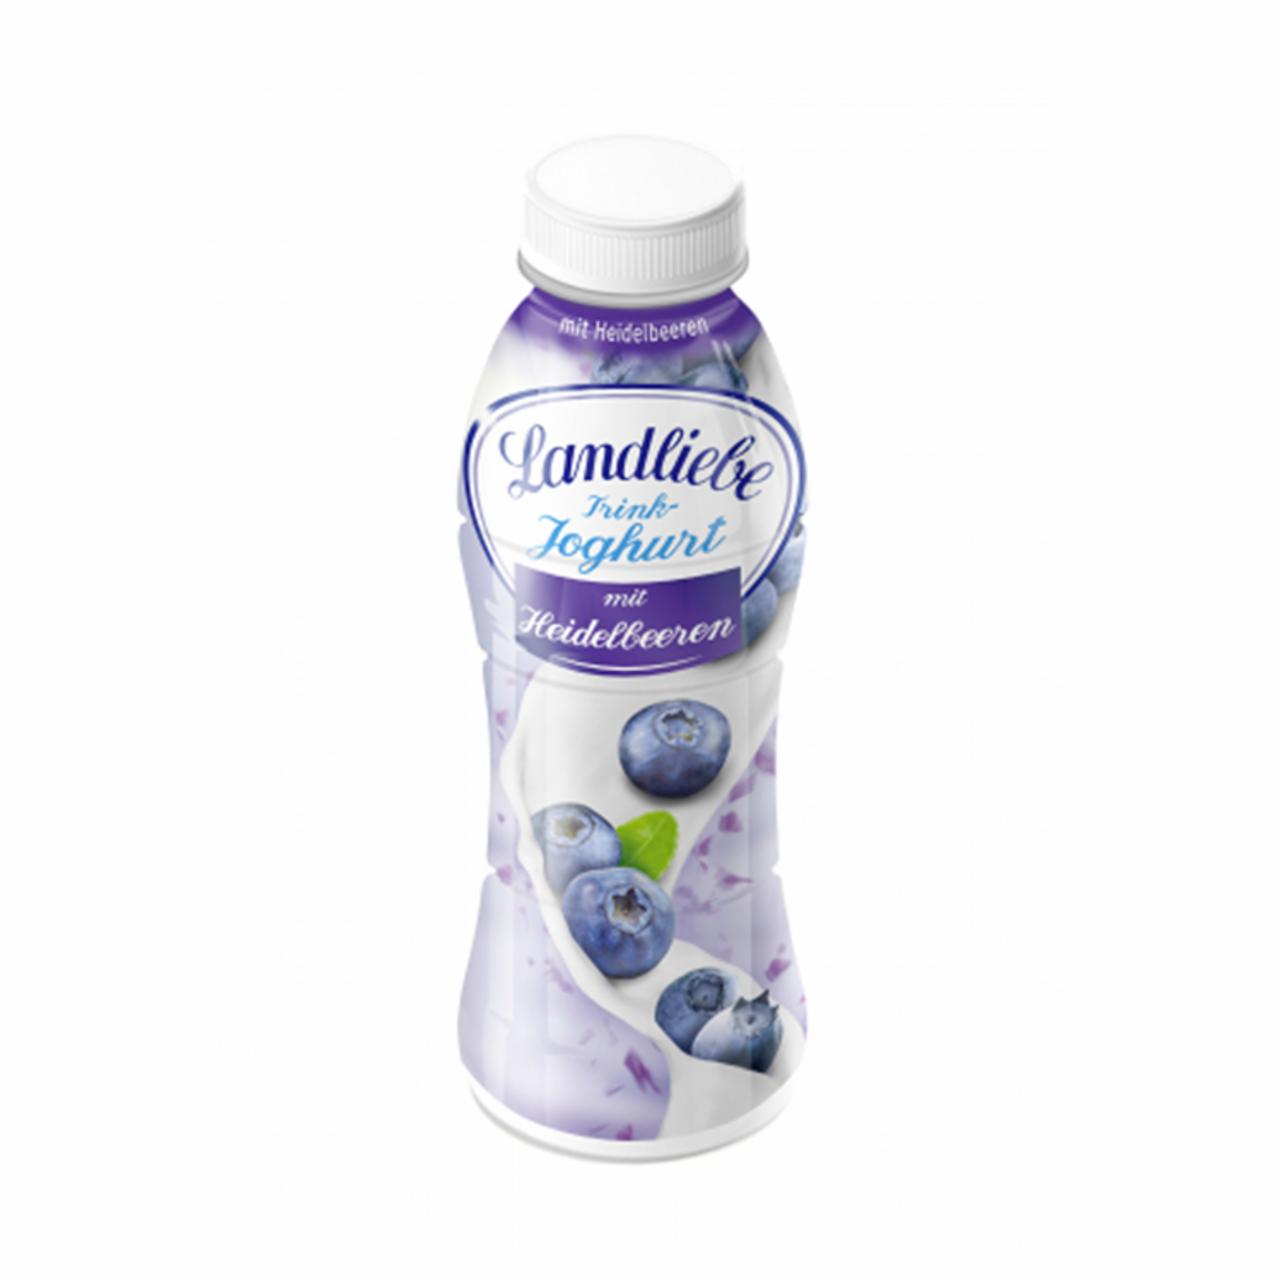 Képek - Landliebe zsírszegény áfonyás joghurtital 350 g